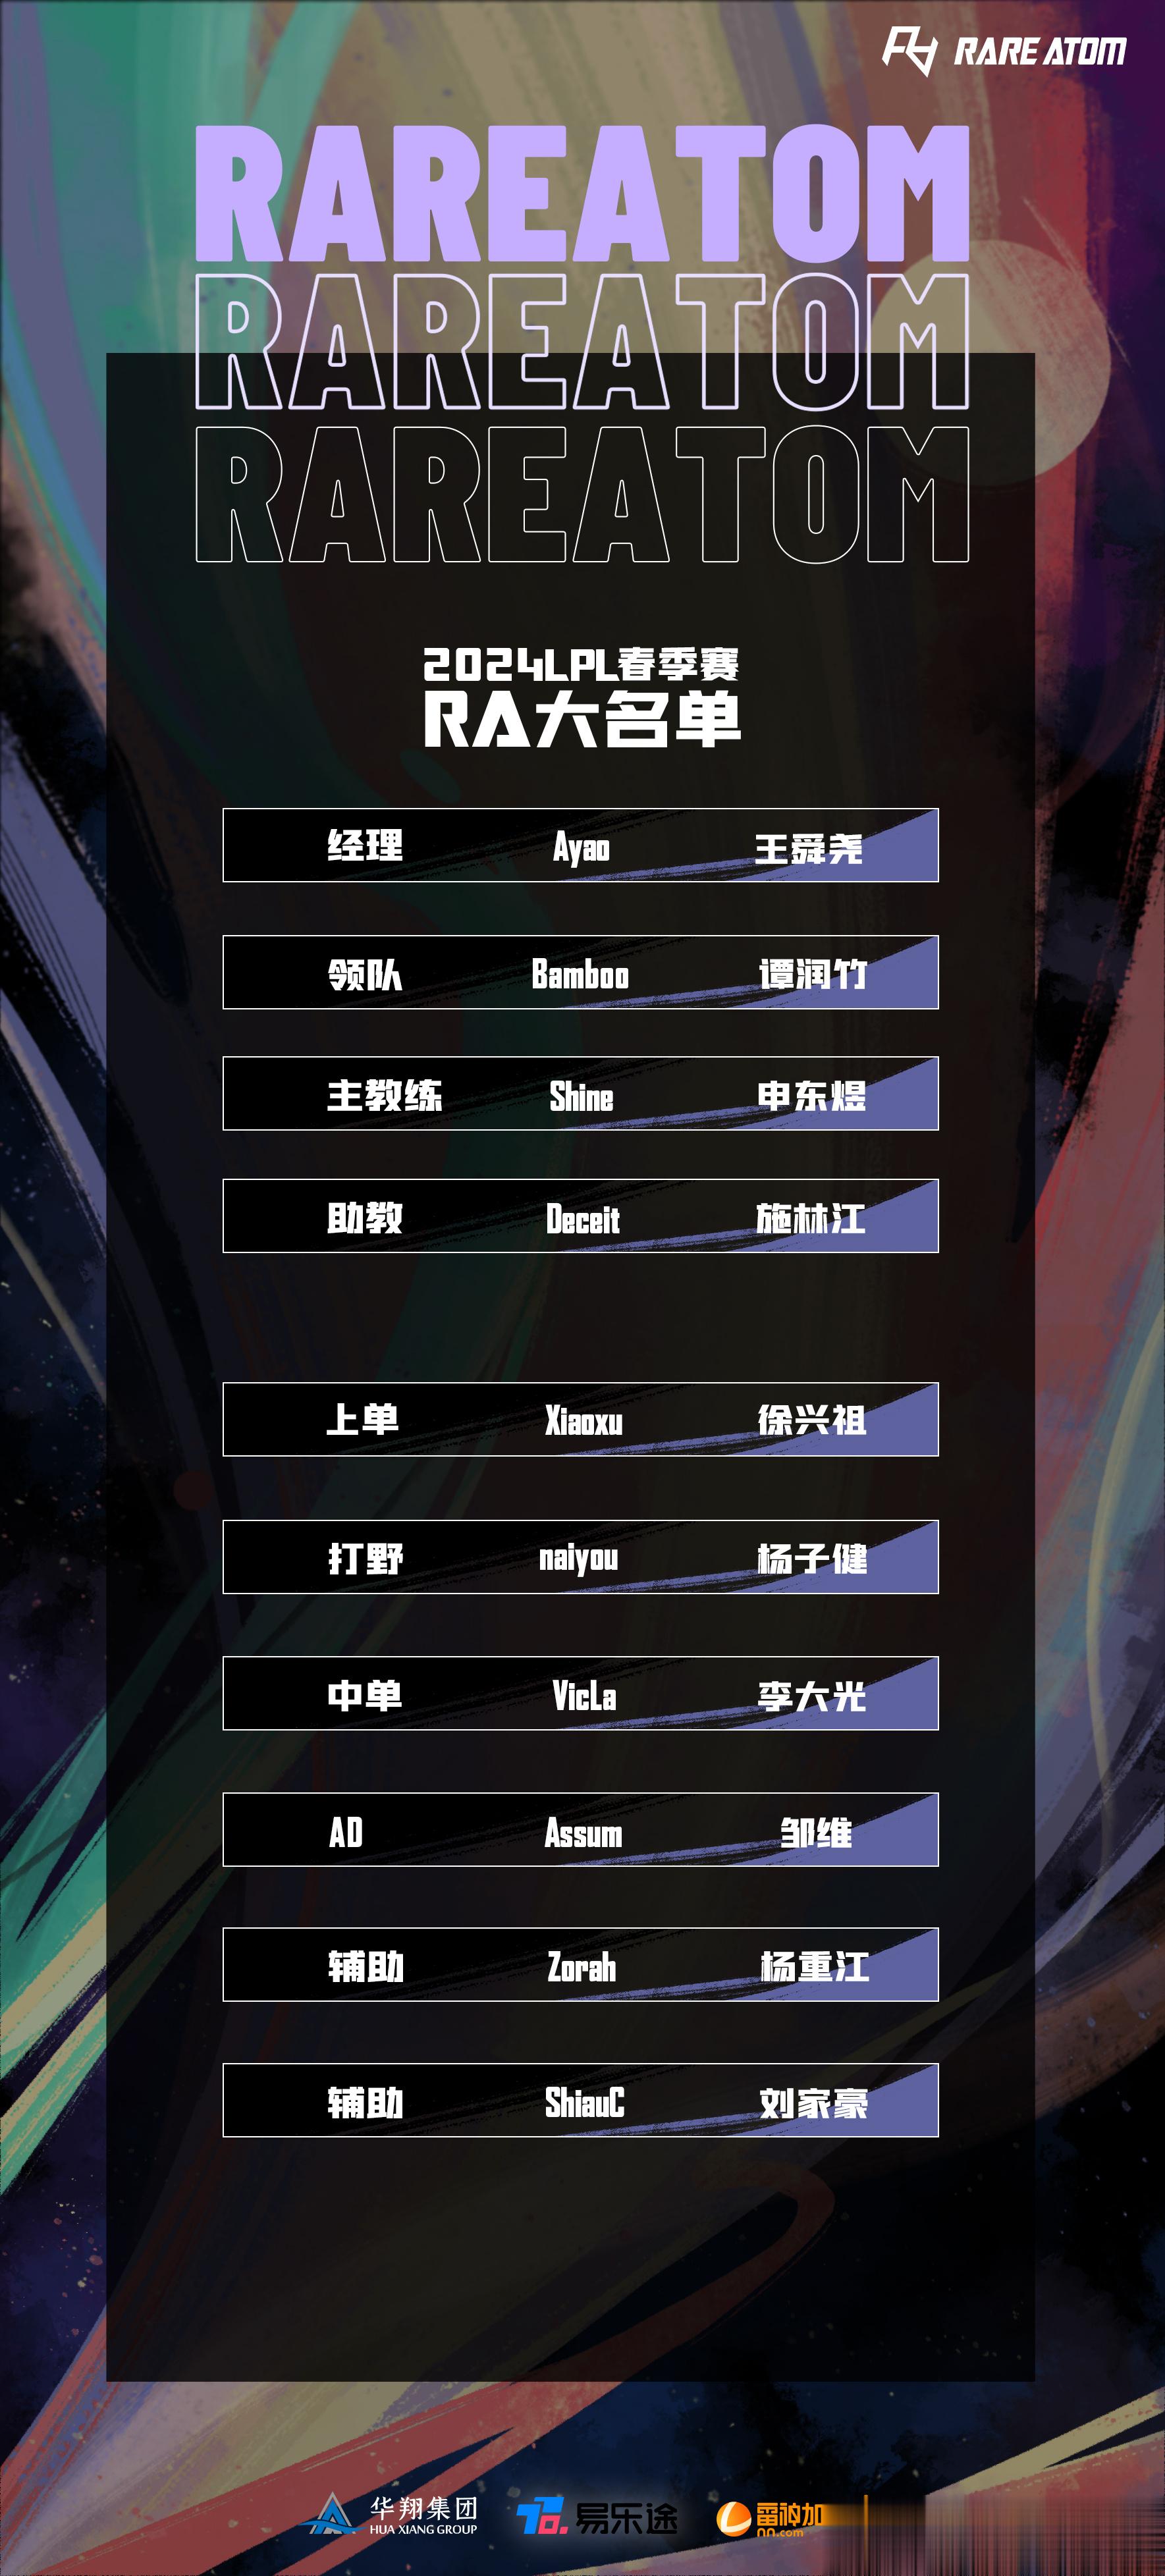 RA官宣新赛季大名单：上单xiaoxu、打野naiyou、辅助ShiauC